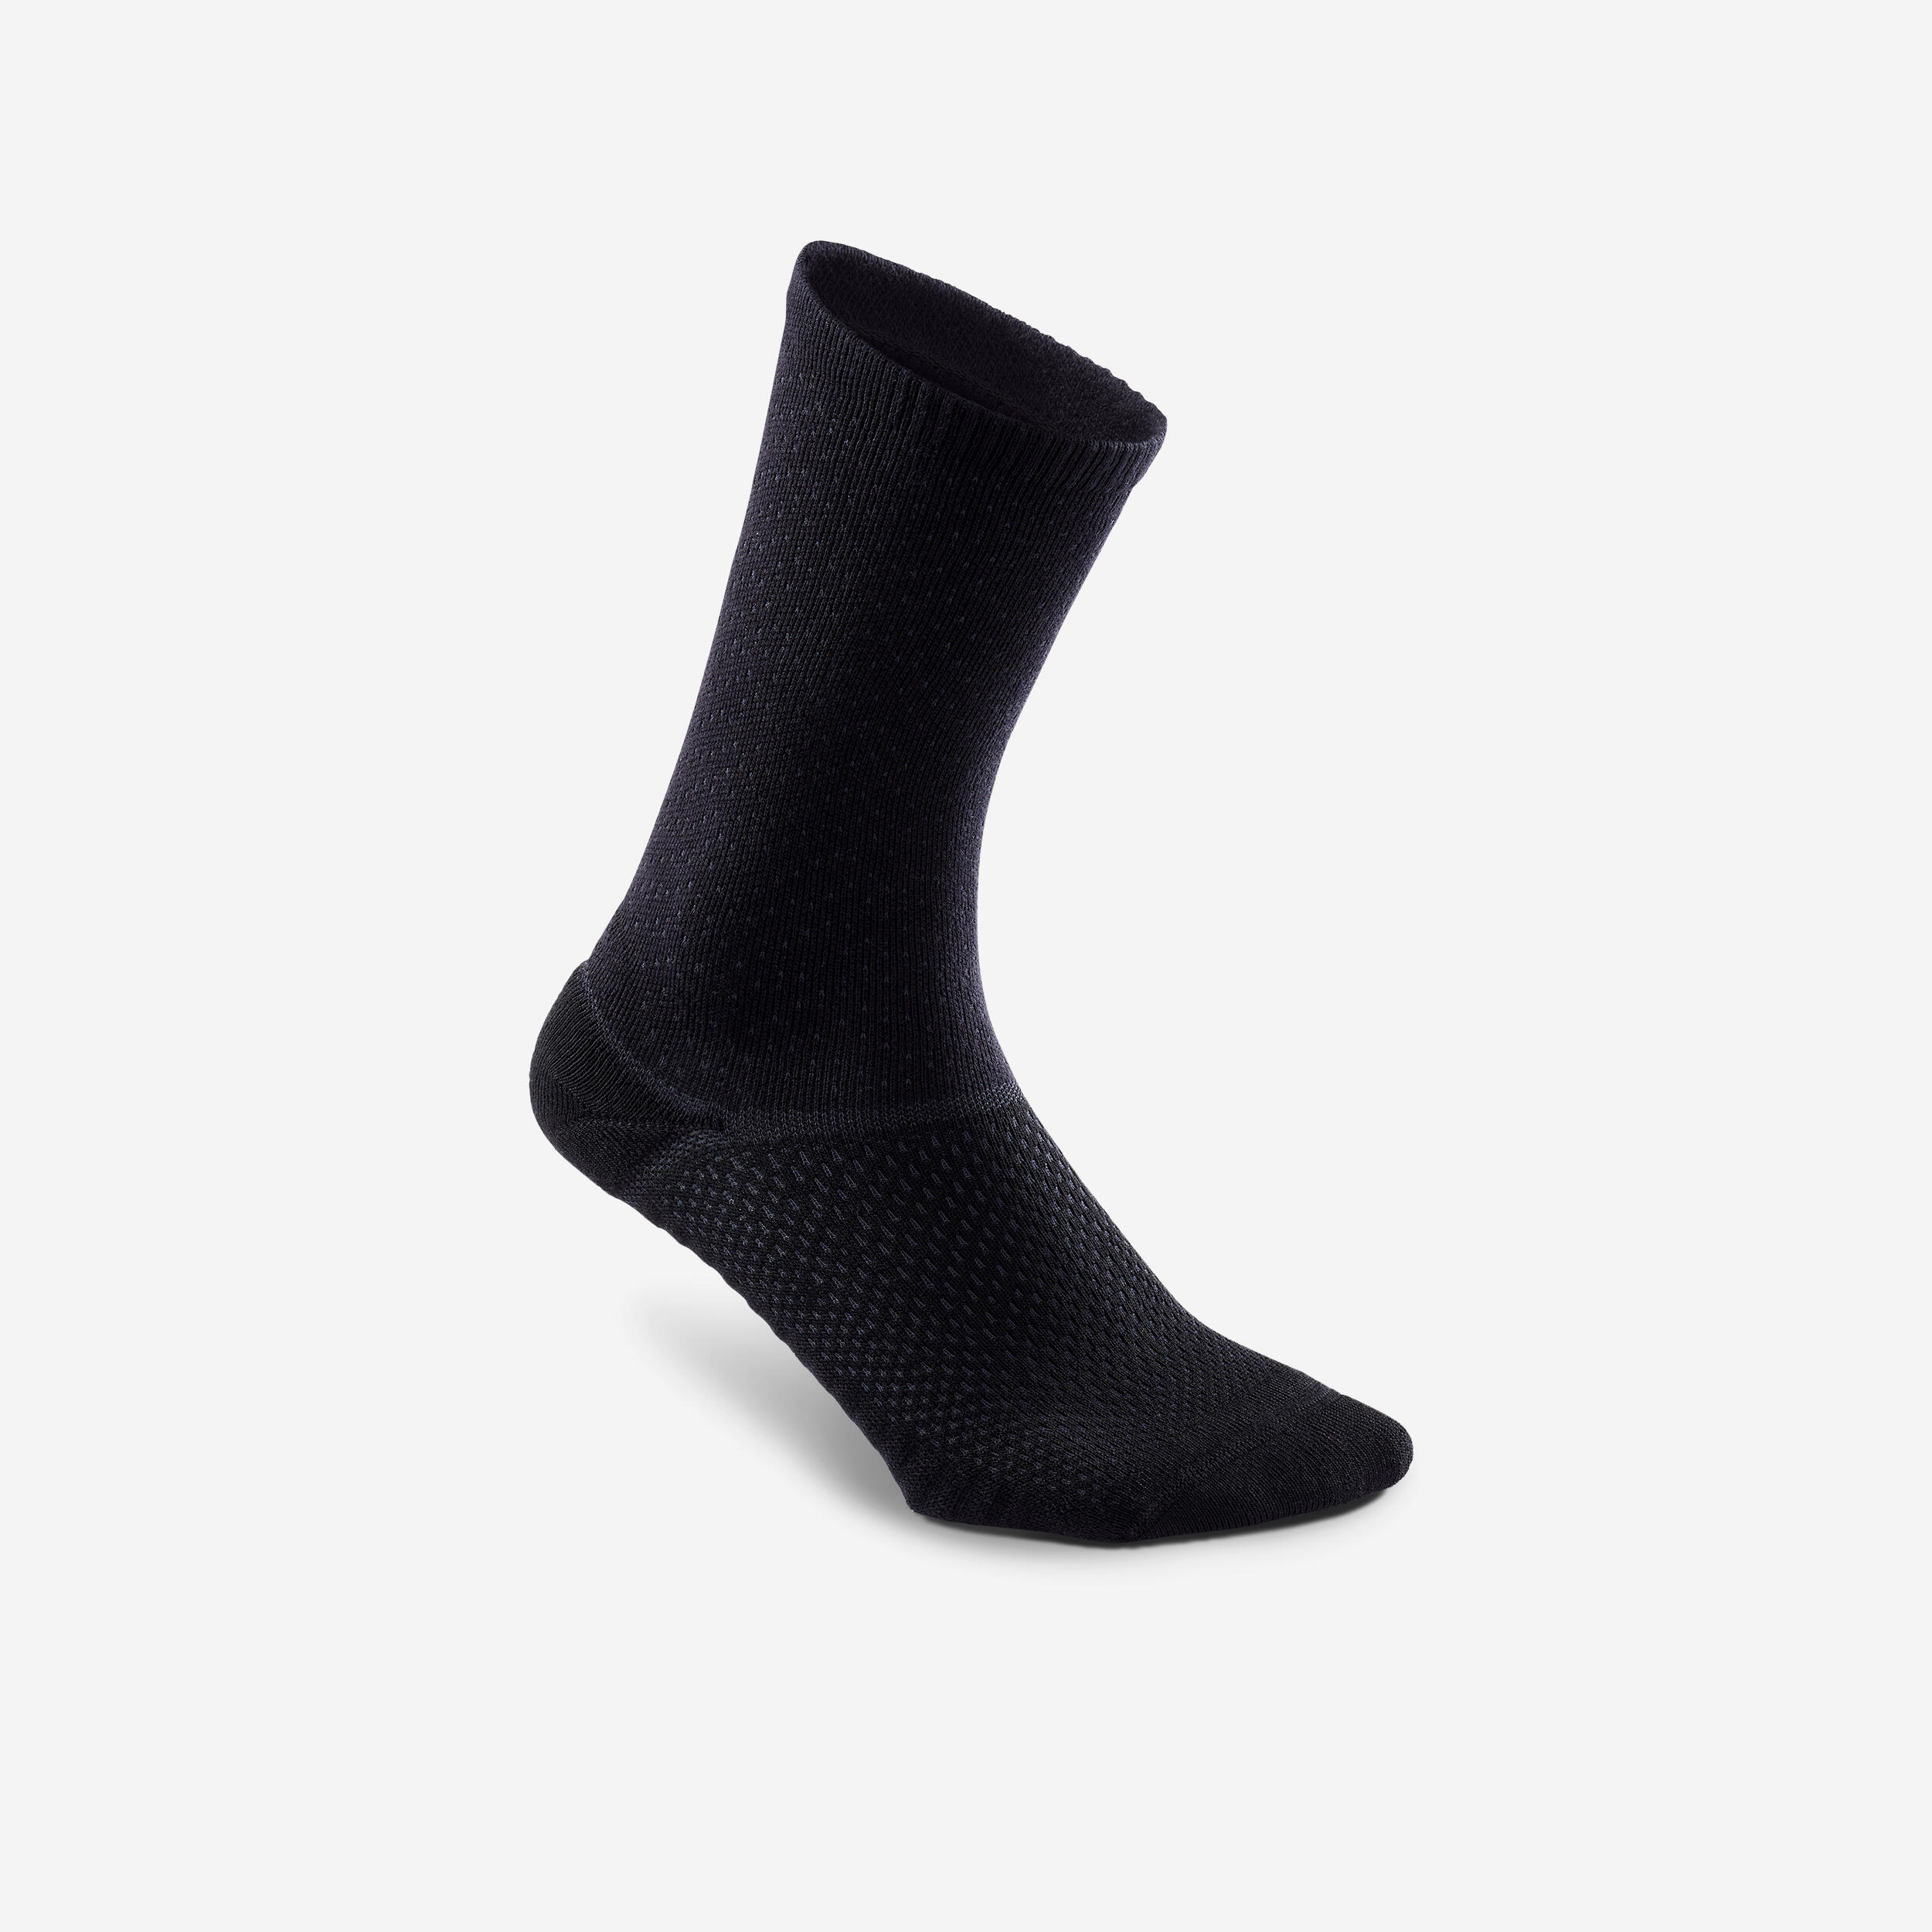 NEWFEEL High socks - 2-Pair pack - Black